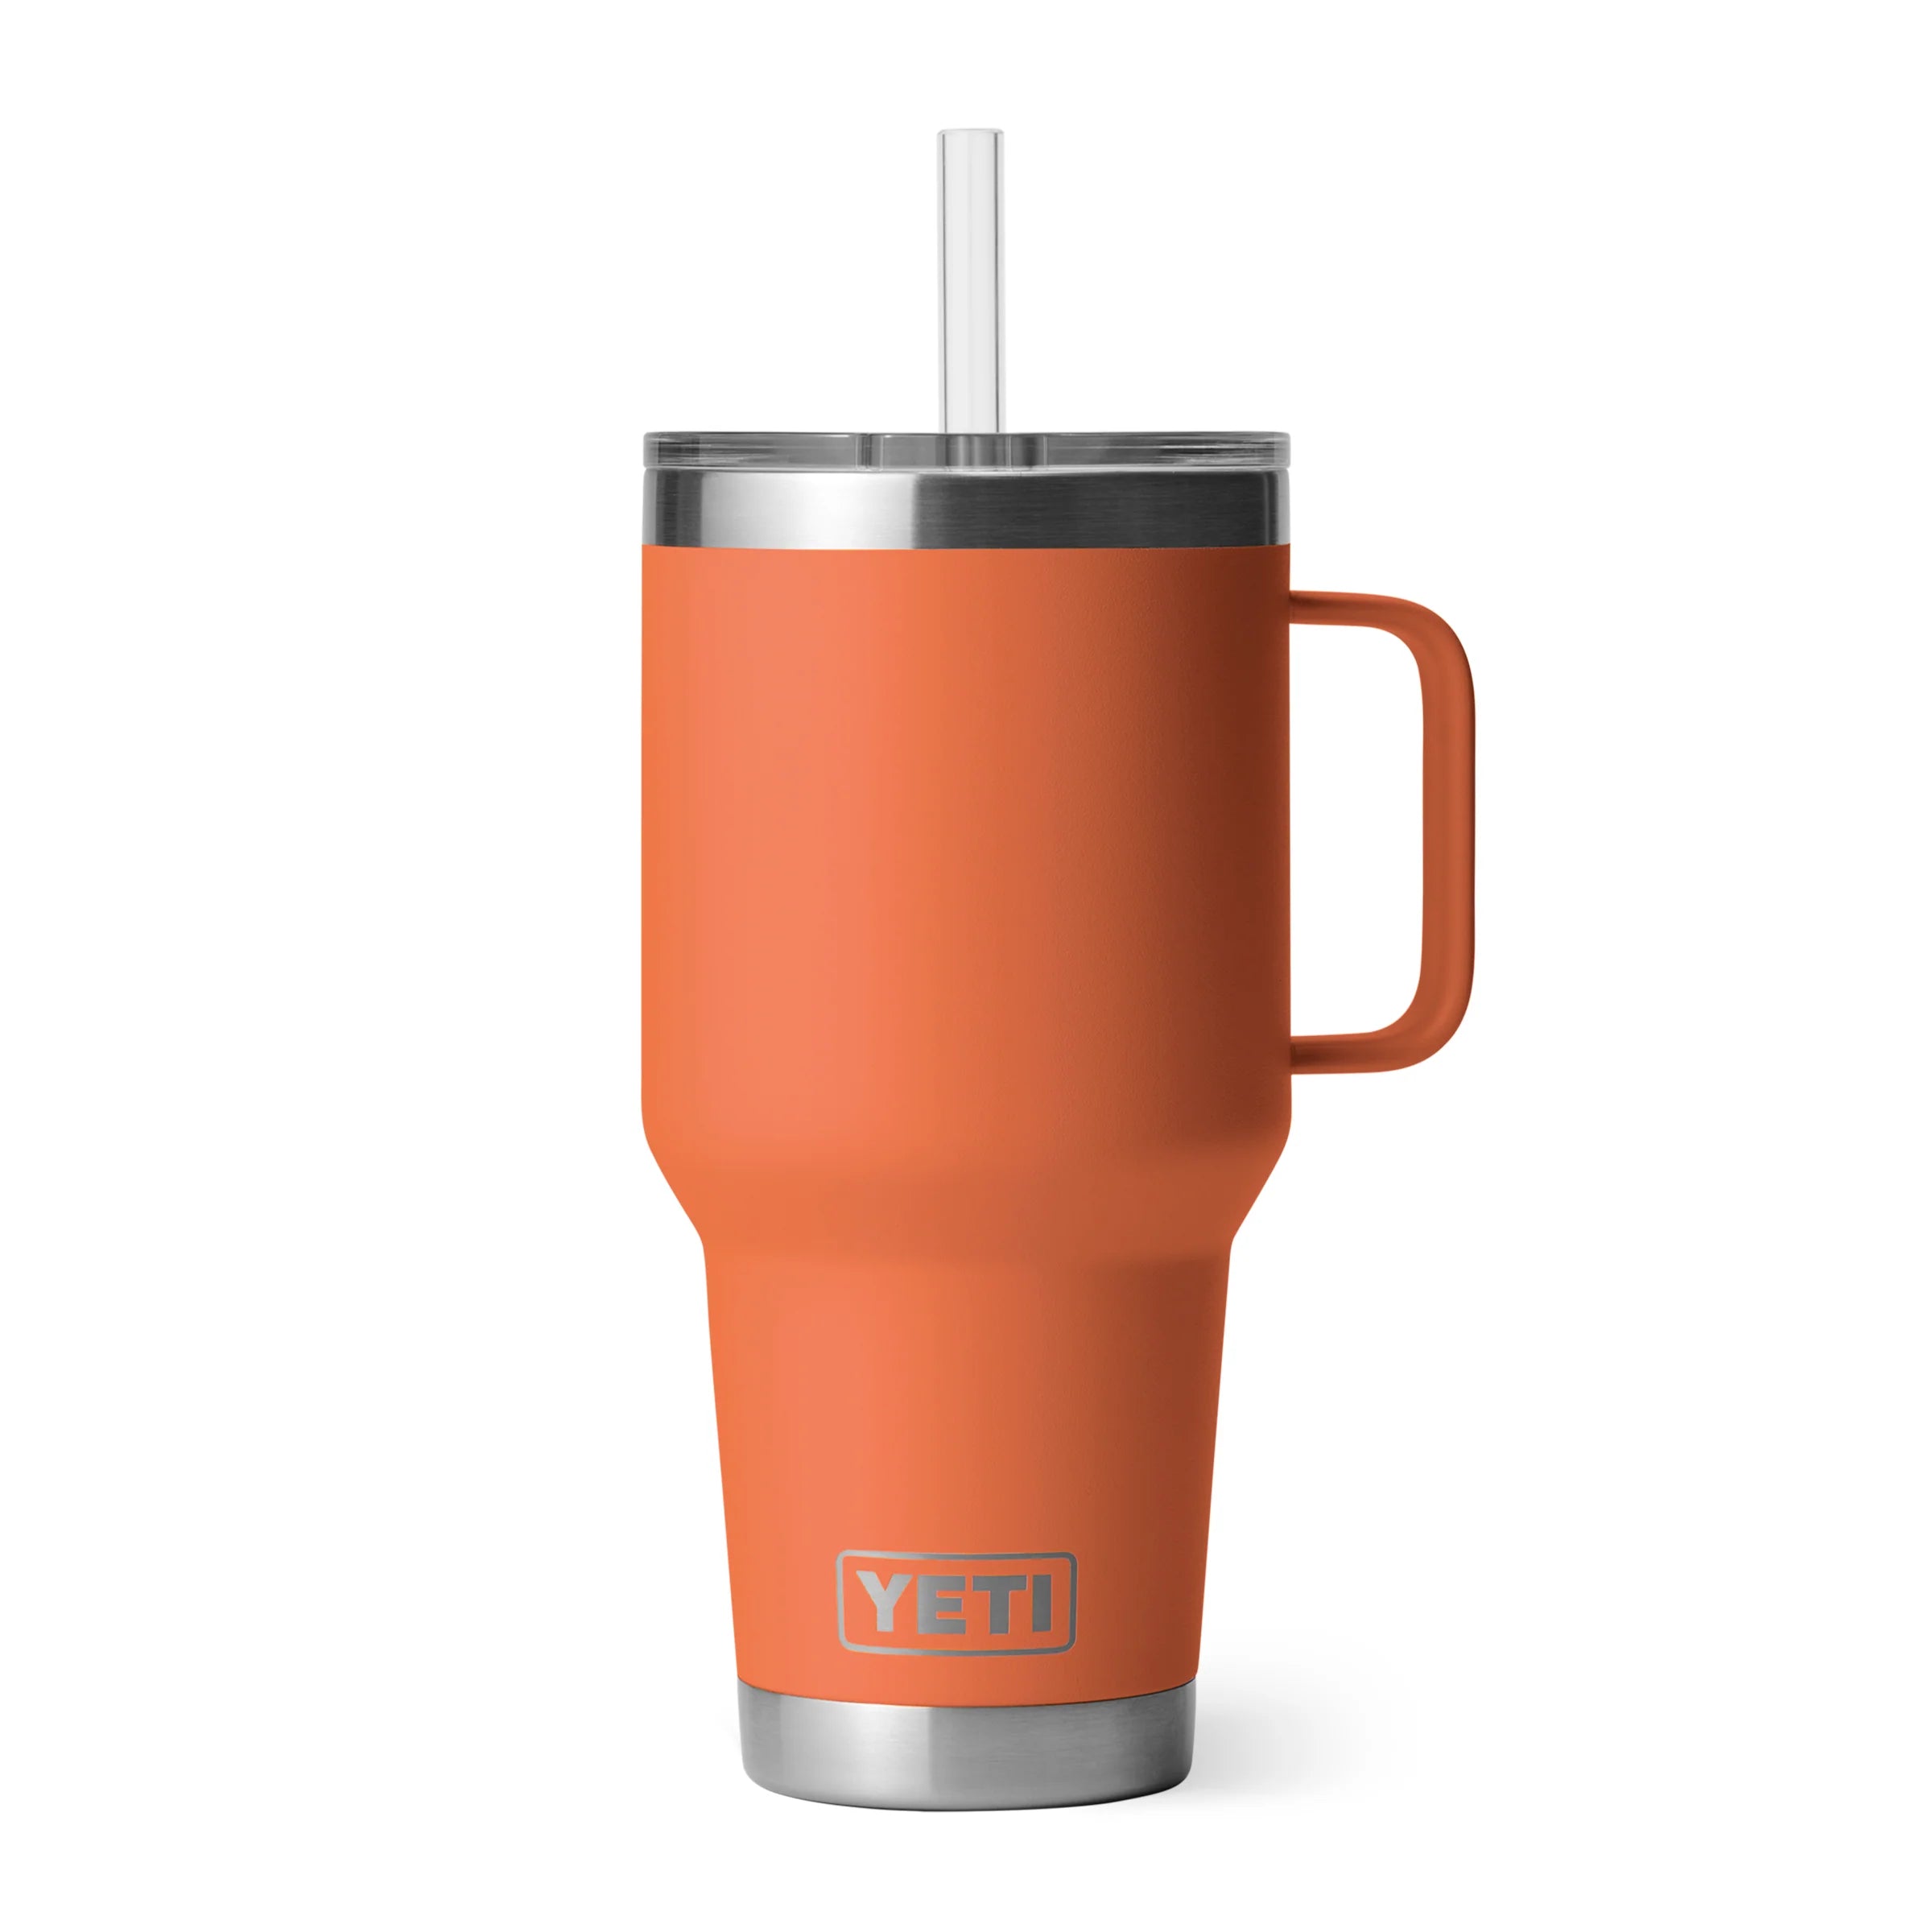 A YETI Rambler 35 oz Straw Mug, in limited edition High Desert Clay.